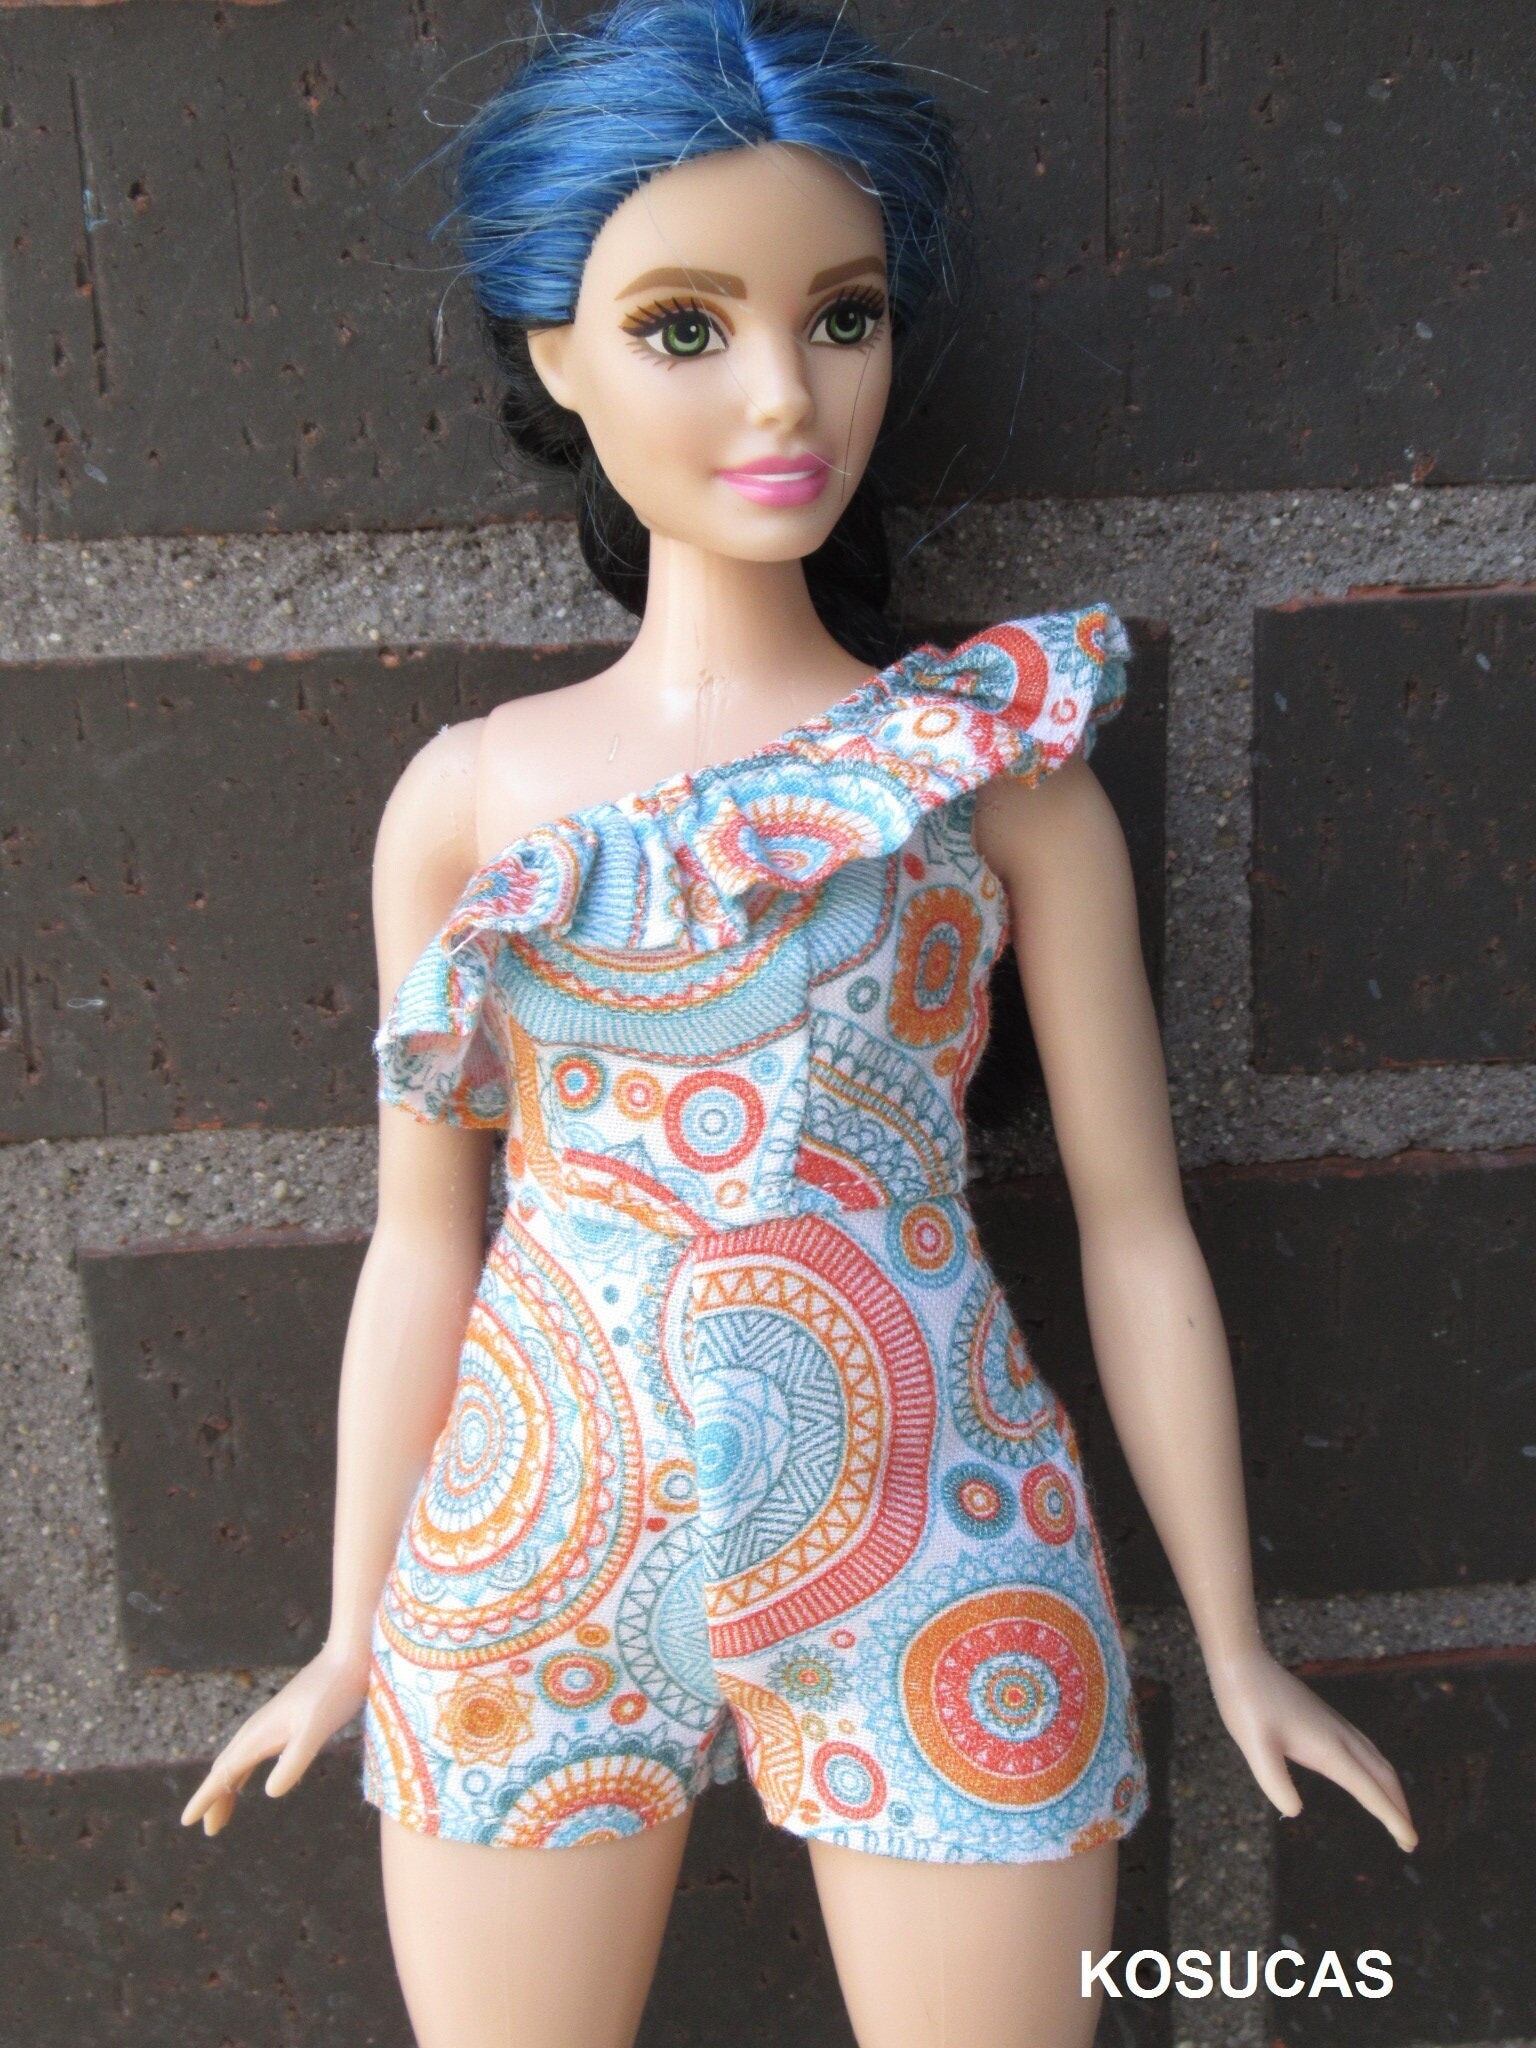 Barbie : la poupée moins sexy au naturel et sans maquillage